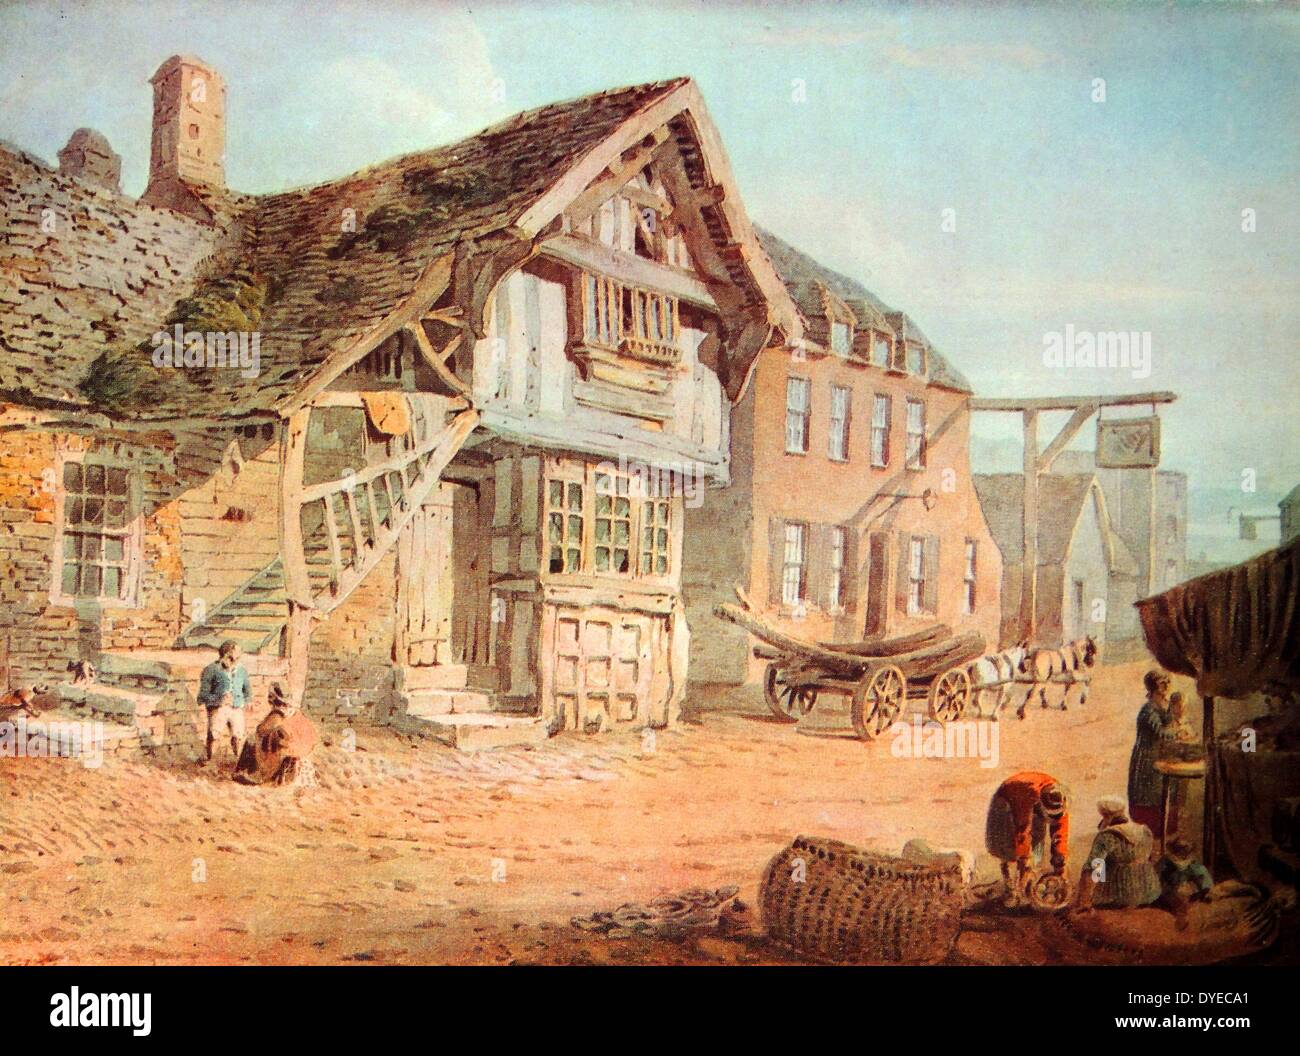 La peinture de paysage intitulé 'voir' à Conwy Llandudno est un classique ville close dans le Nord du Pays de Galles. Par John Varley (1778 - 1842) l'anglais Water-Colorist et astrologue. Datée 1801 Banque D'Images